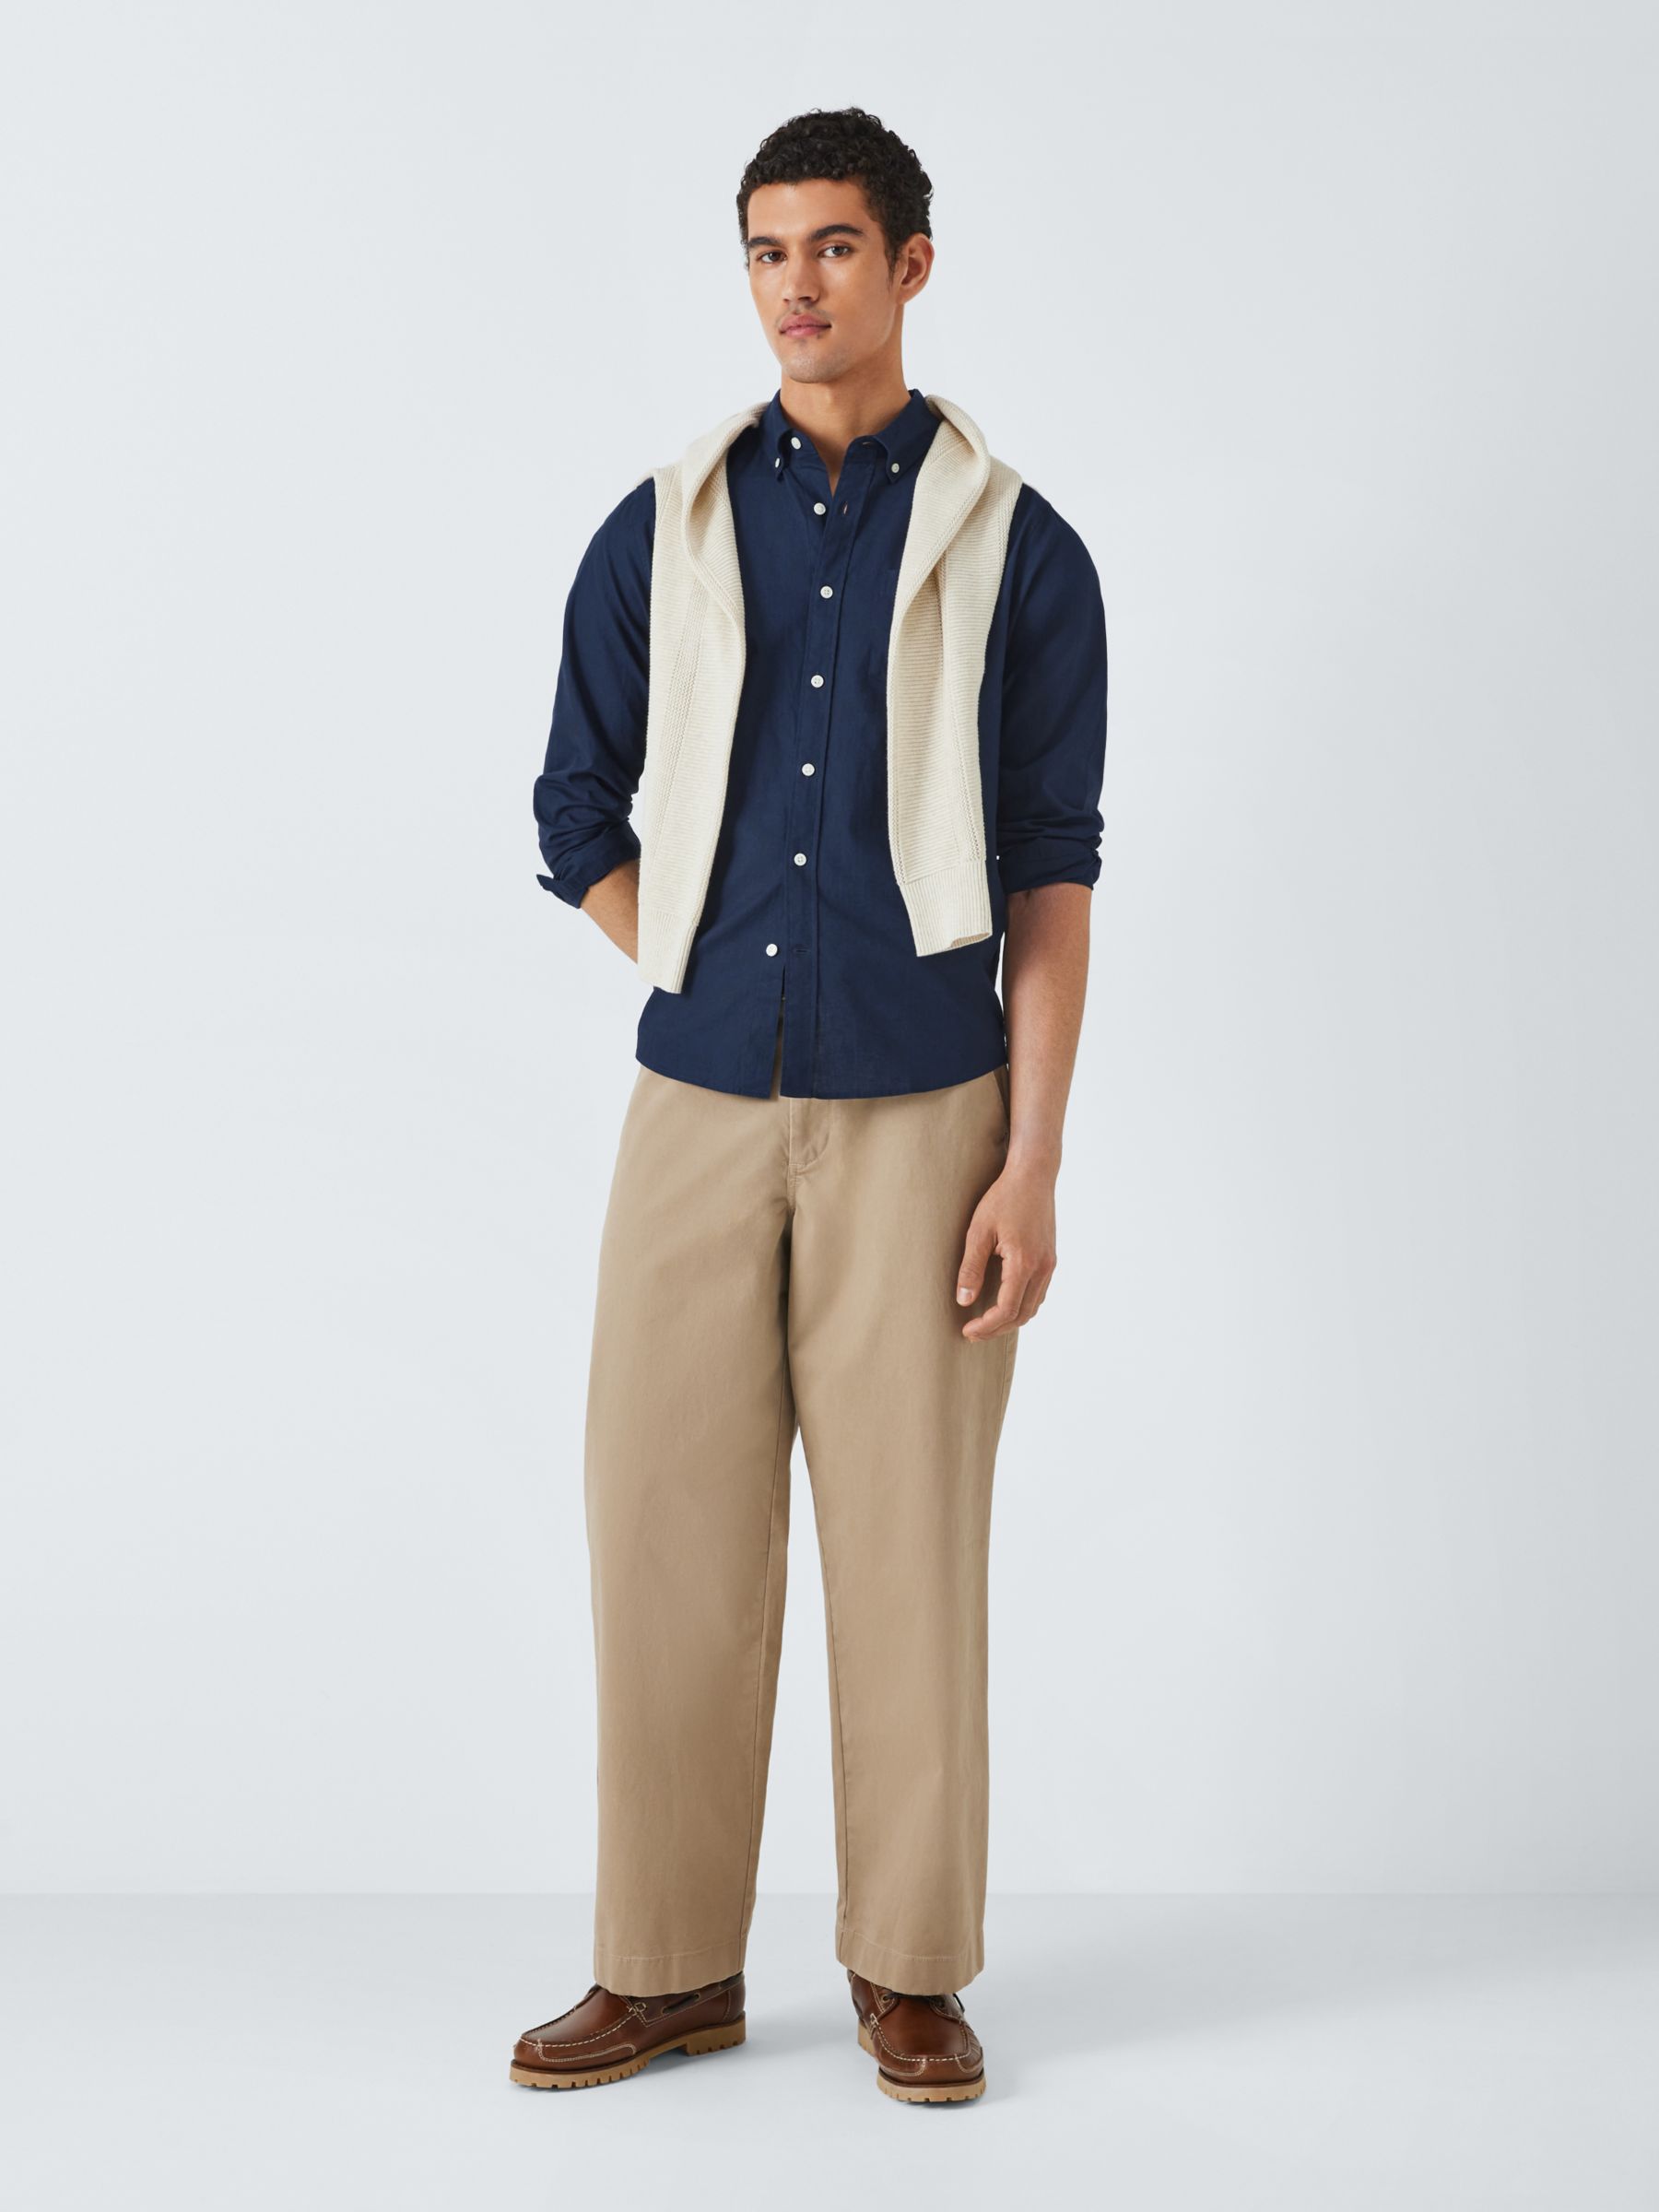 John Lewis Linen Blend Long Sleeve Shirt, Navy, M